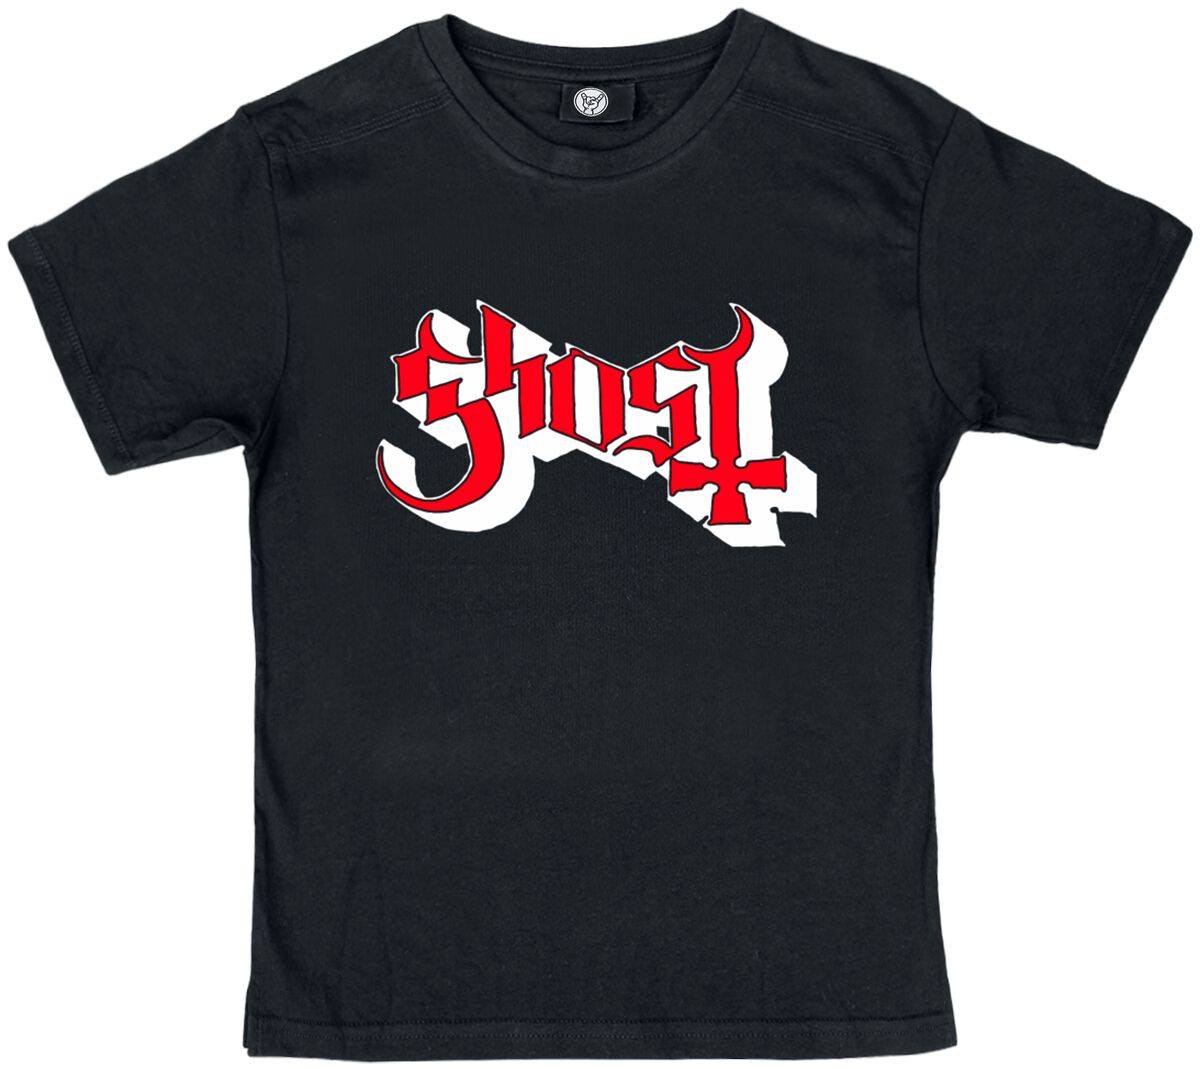 T-shirt de Ghost - Metal-Kids - Logo - 128 - pour filles & garçonse - noir